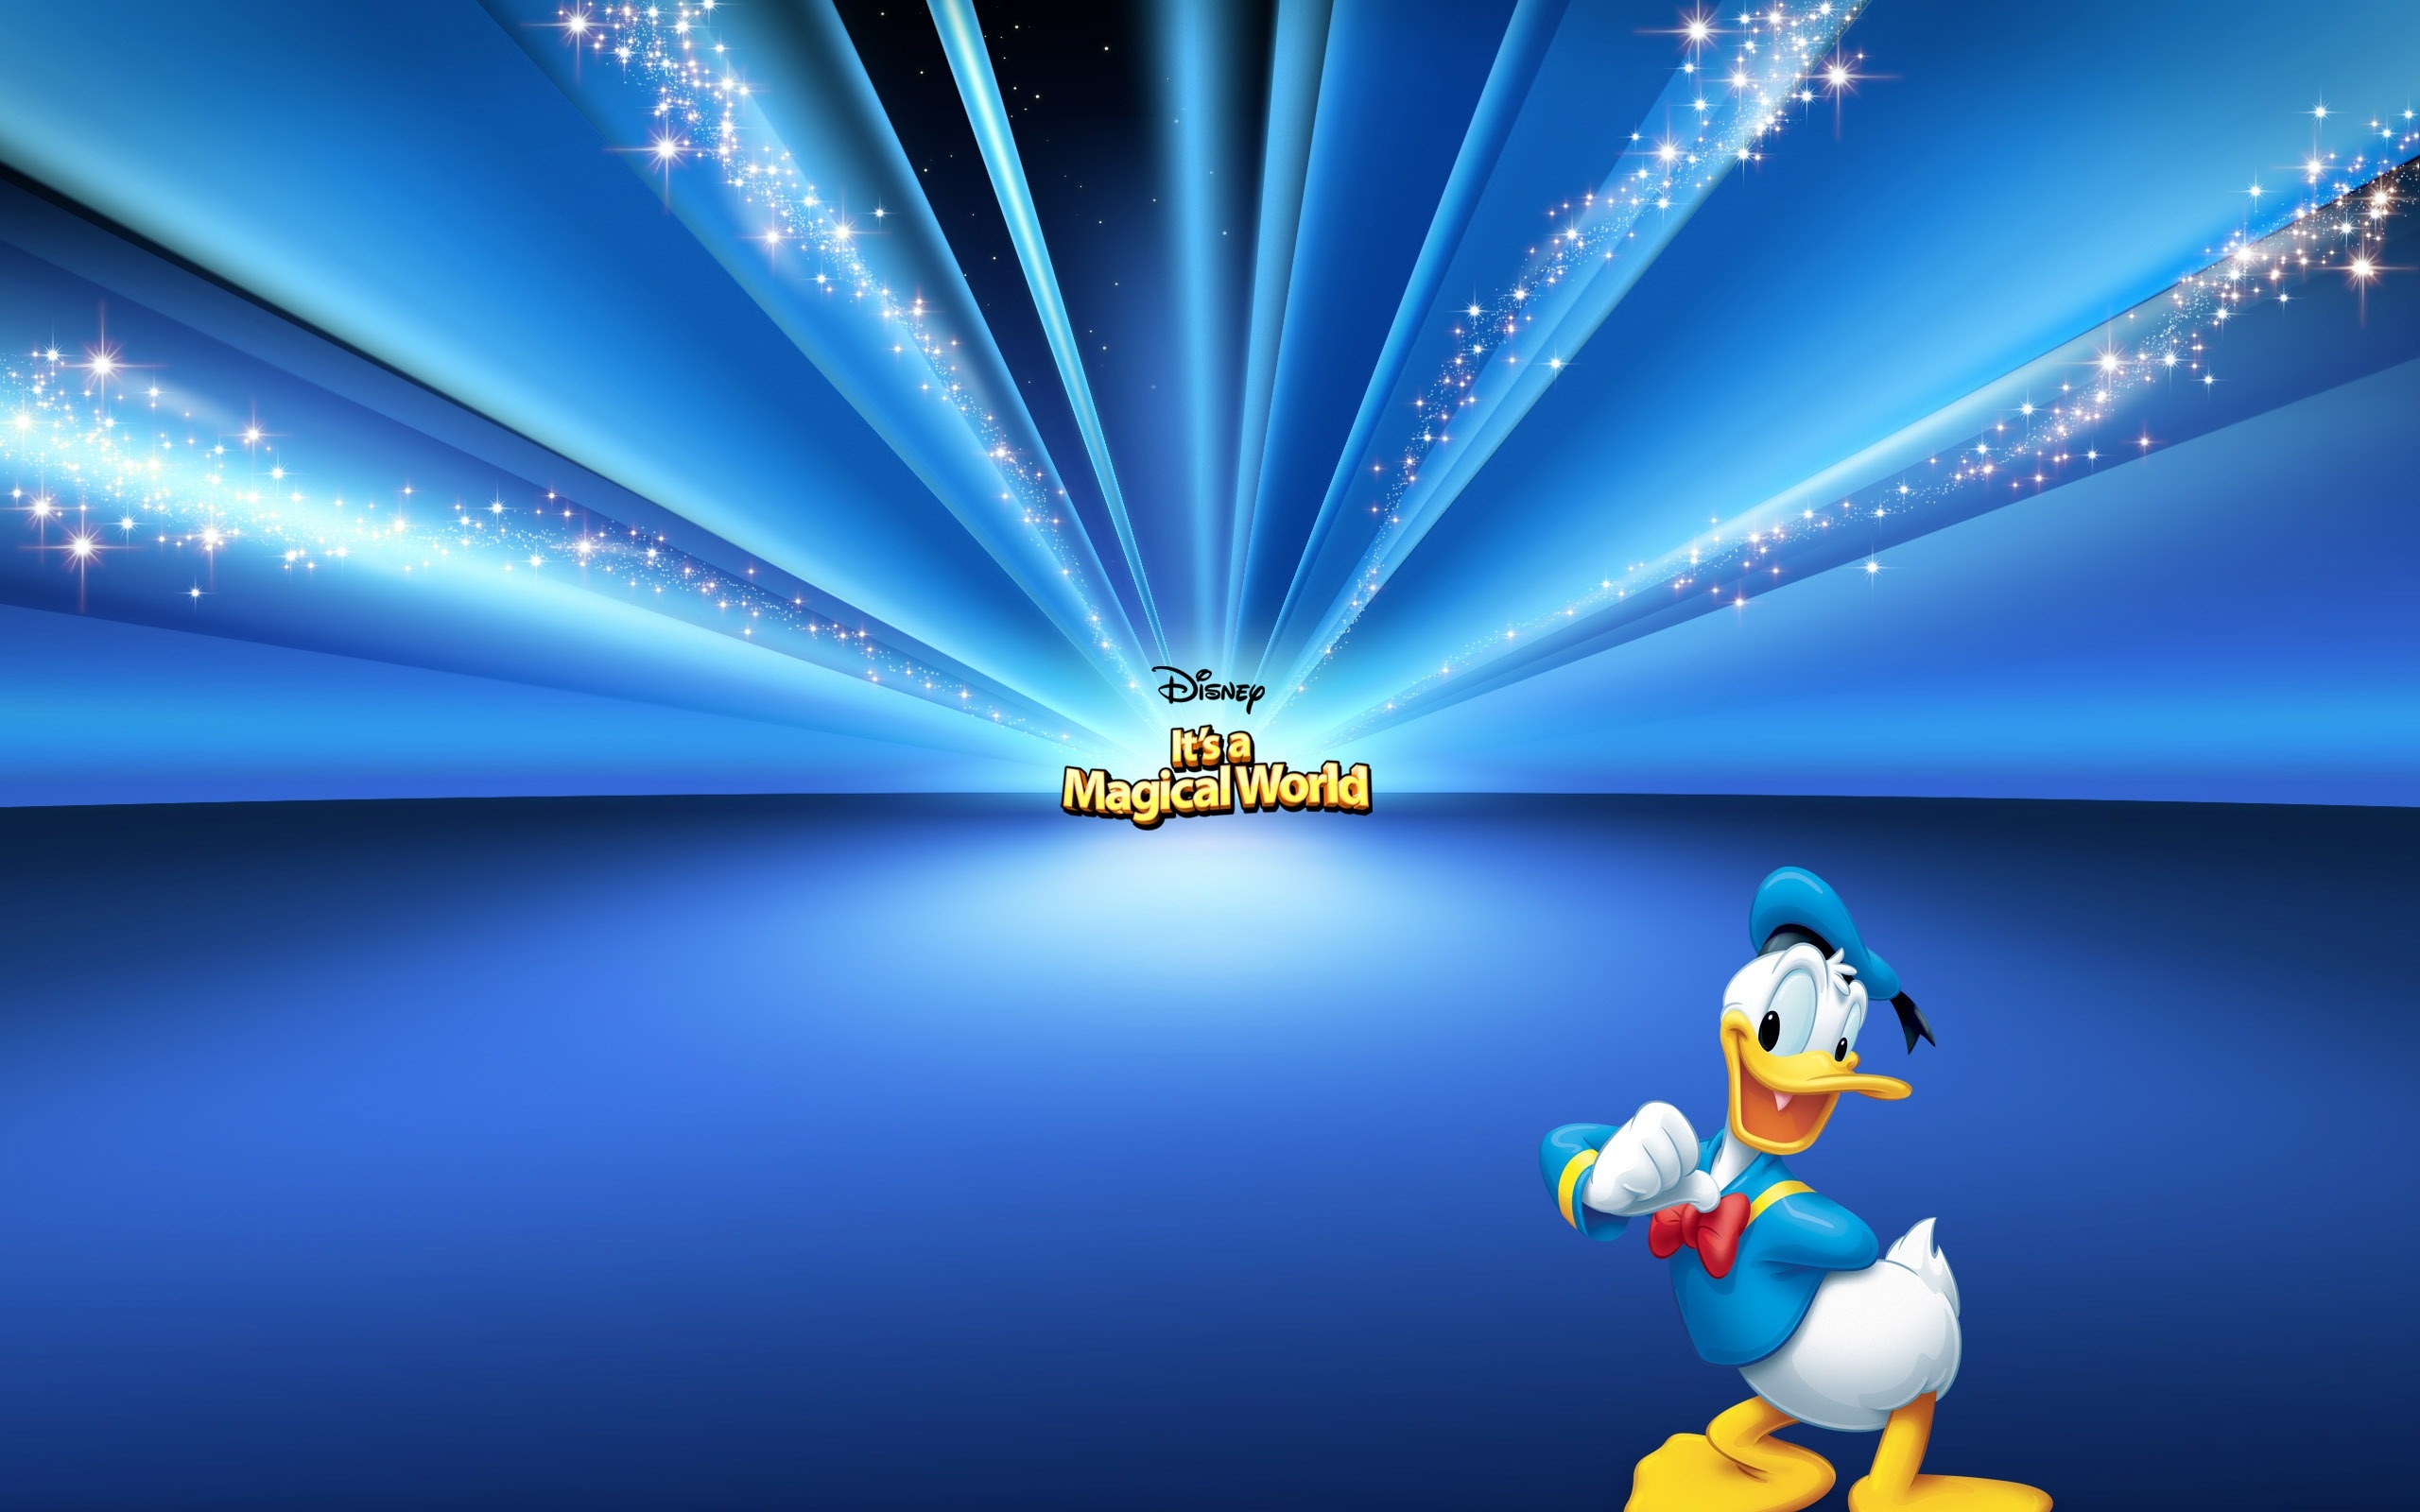 Donald Duck Cartoon for 2560 x 1600 widescreen resolution